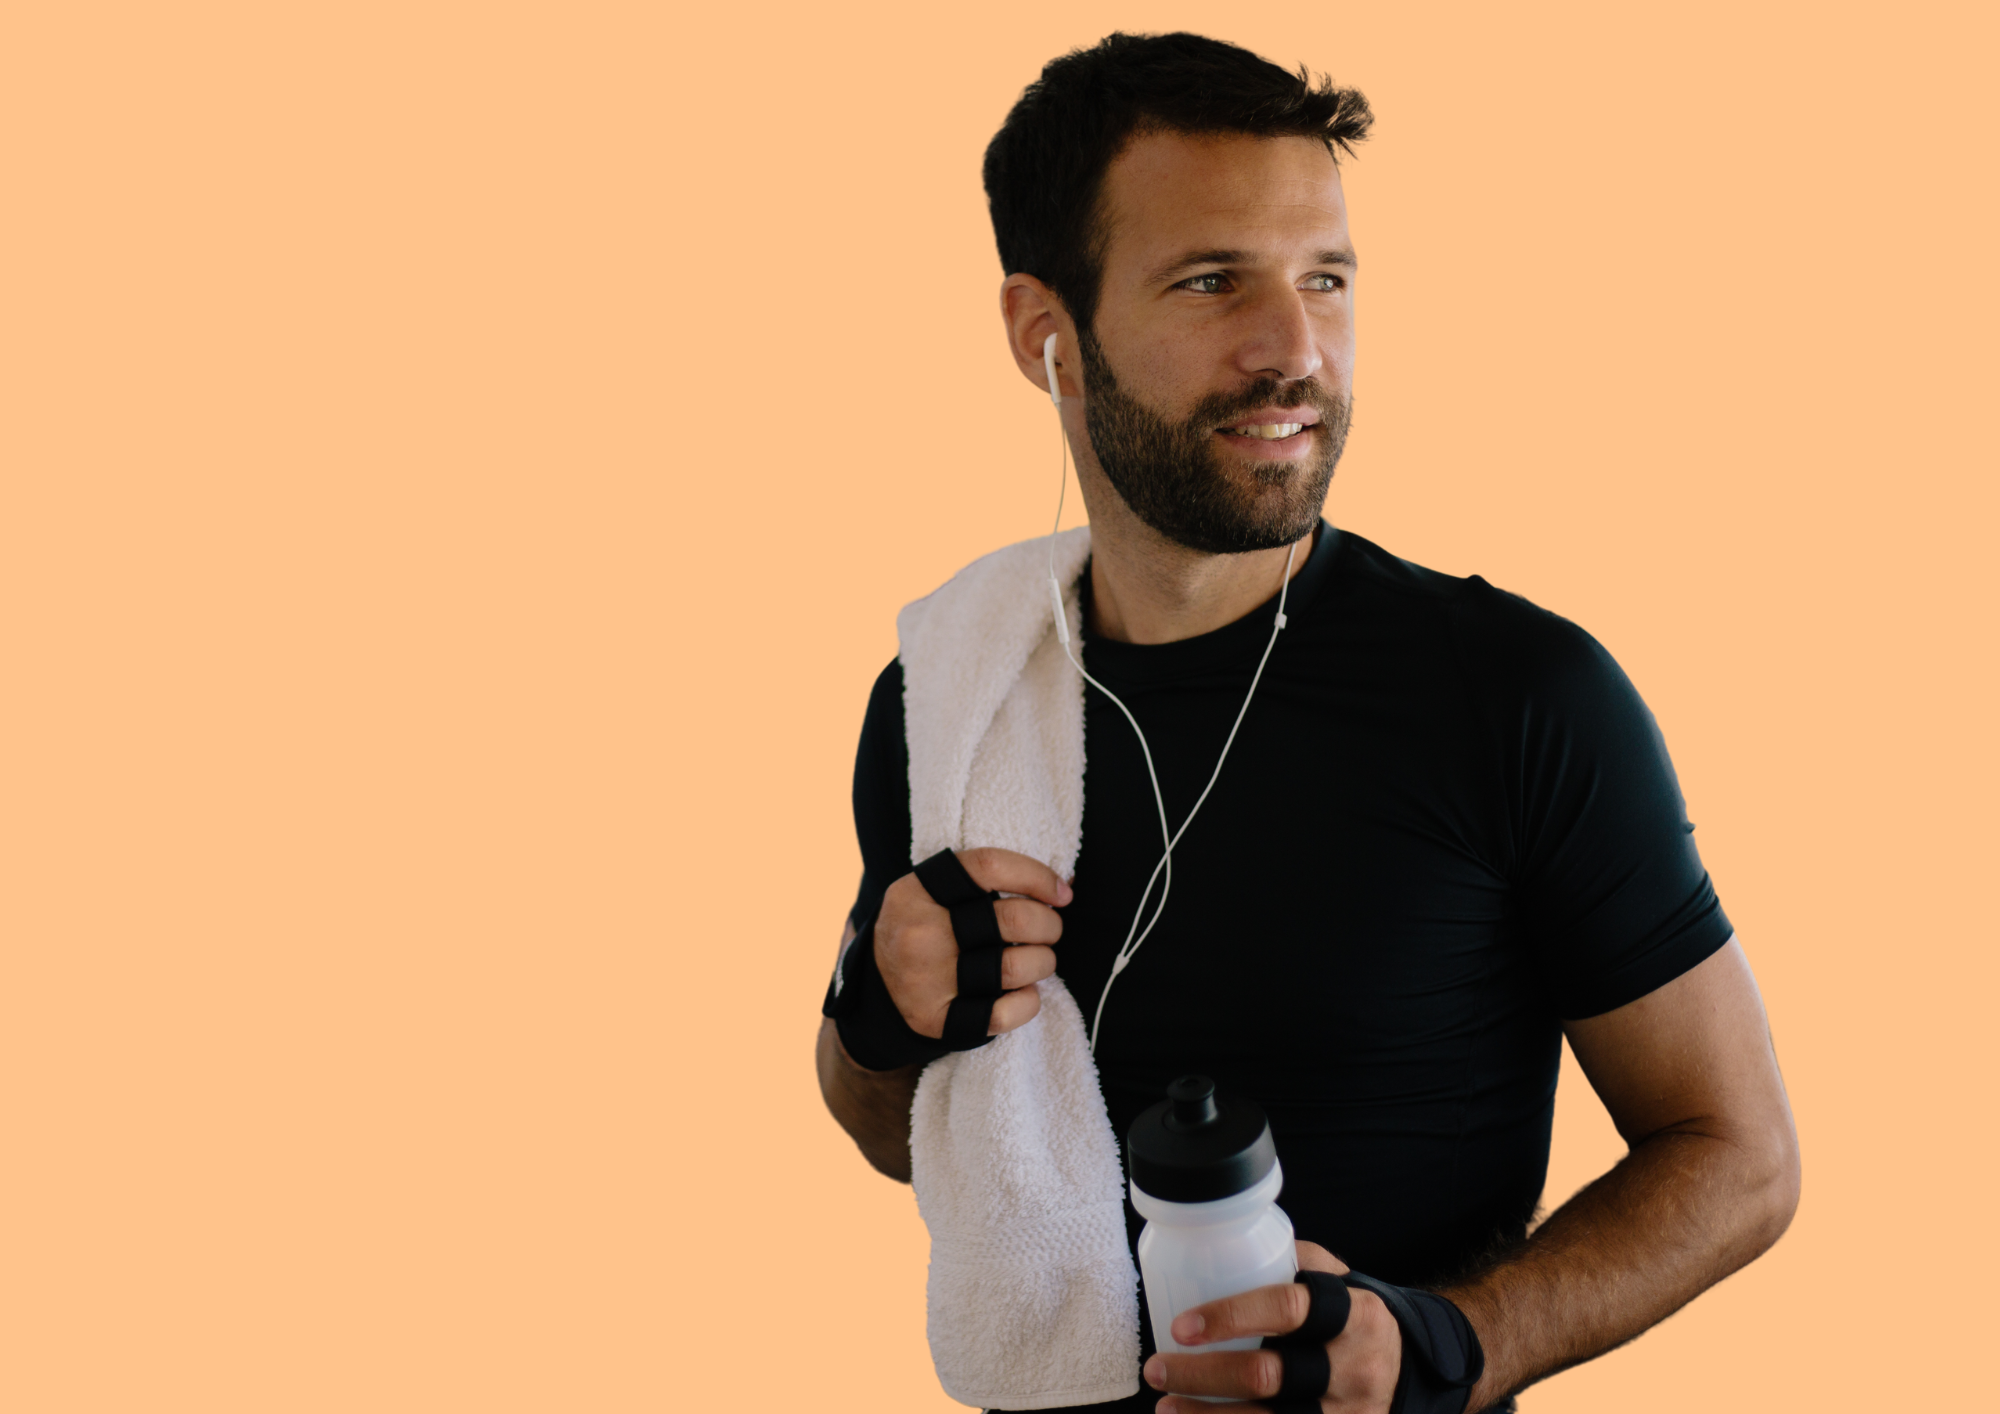 Mann im Fitnesscenter mit Wasserflasche, Kopfhörern und Handtuch über der Schulter. Oranger Hintergrund.